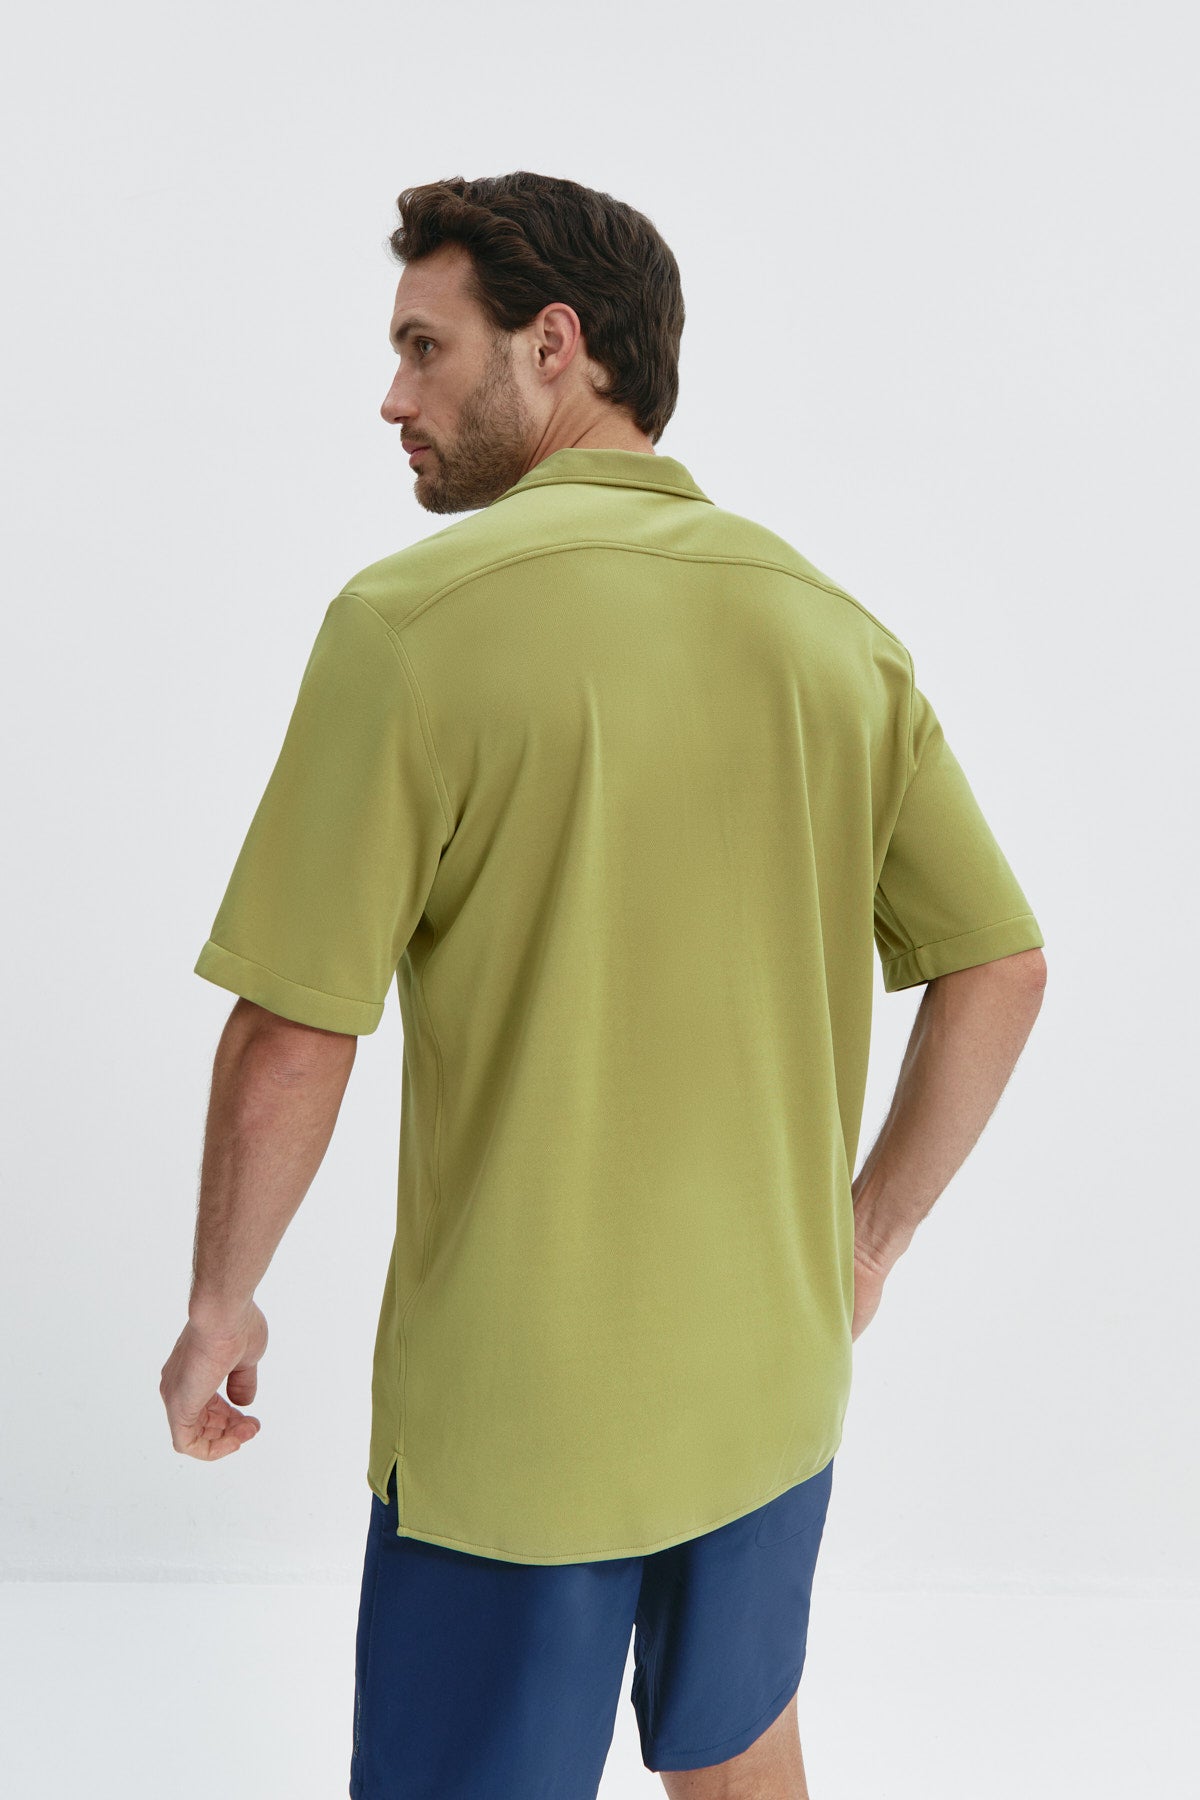 Camisa manga corta verde manzana de Sepiia, fresca y cómoda, perfecta para el verano. Foto espalda.